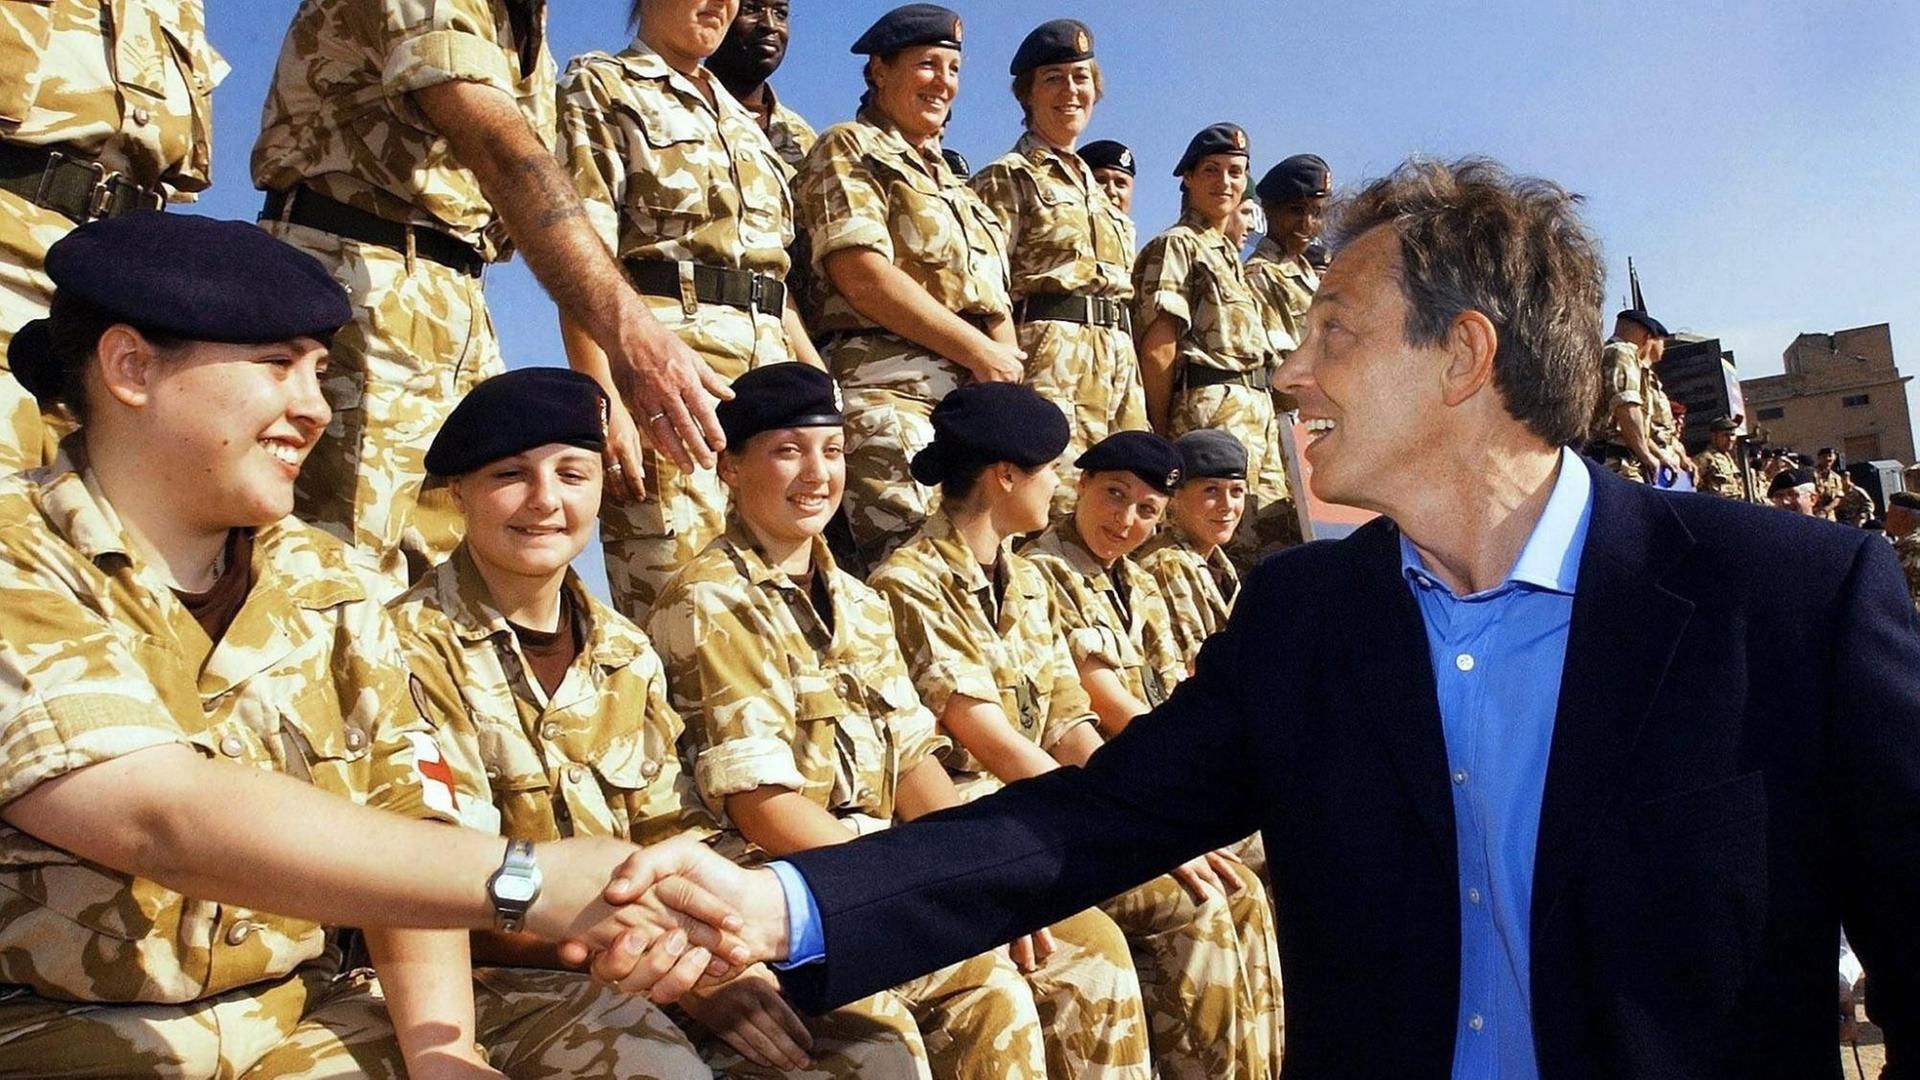 Tony Blair schüttelt einer Soldatin in einer Reihe von Kameradinnen die Hand